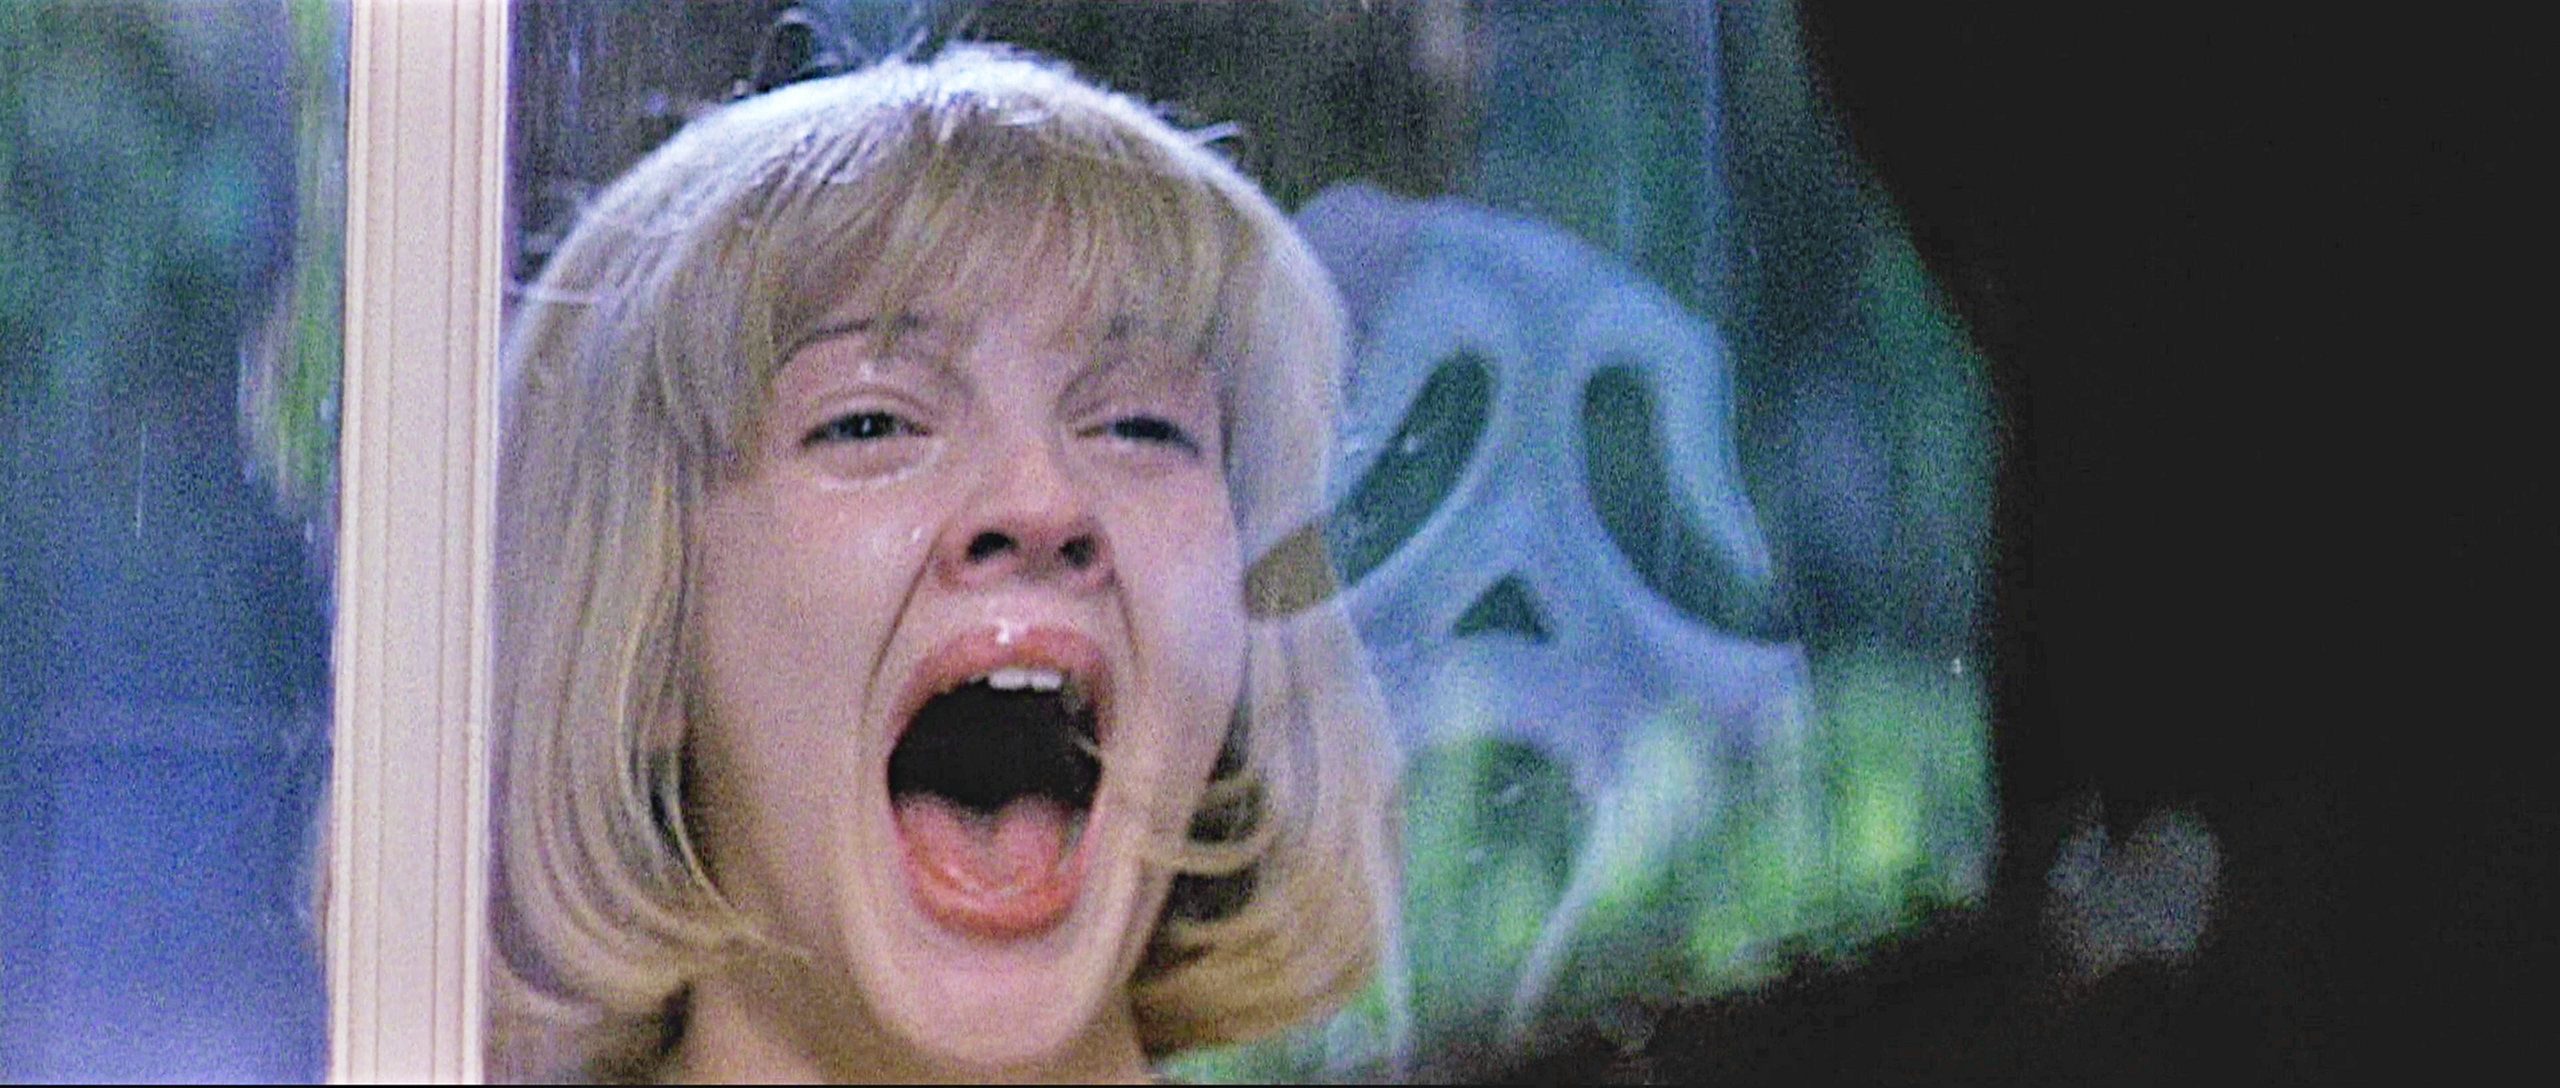 Scream Movie Drew Barrymore - HD Wallpaper 